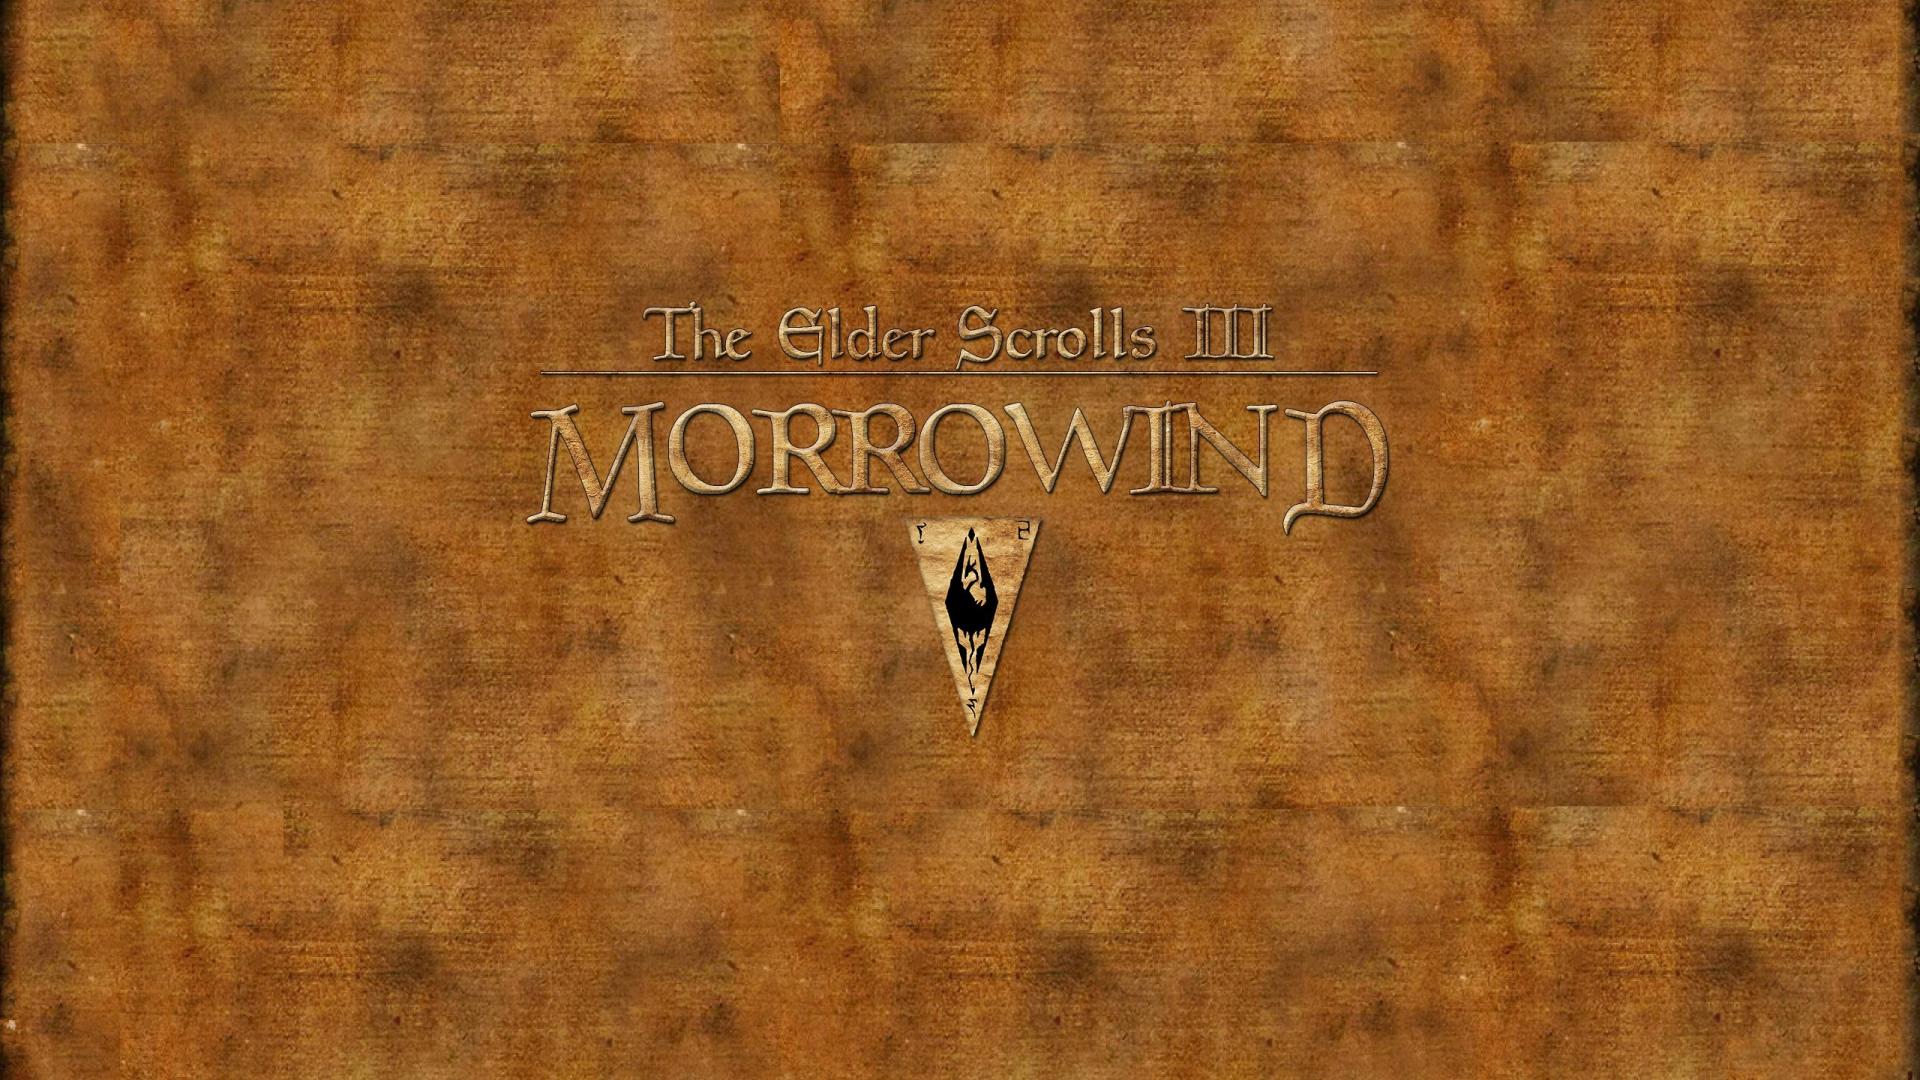 The elder scrolls iii: morrowind wallpaper